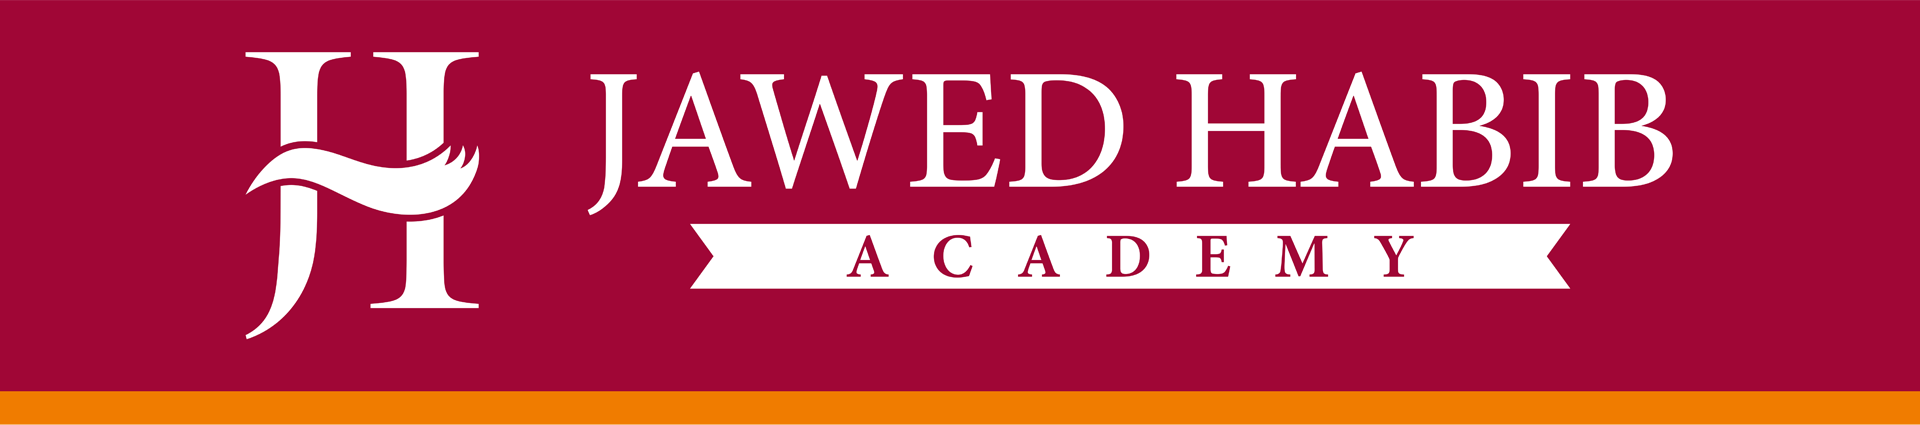 Jawed Habib Academy Logo